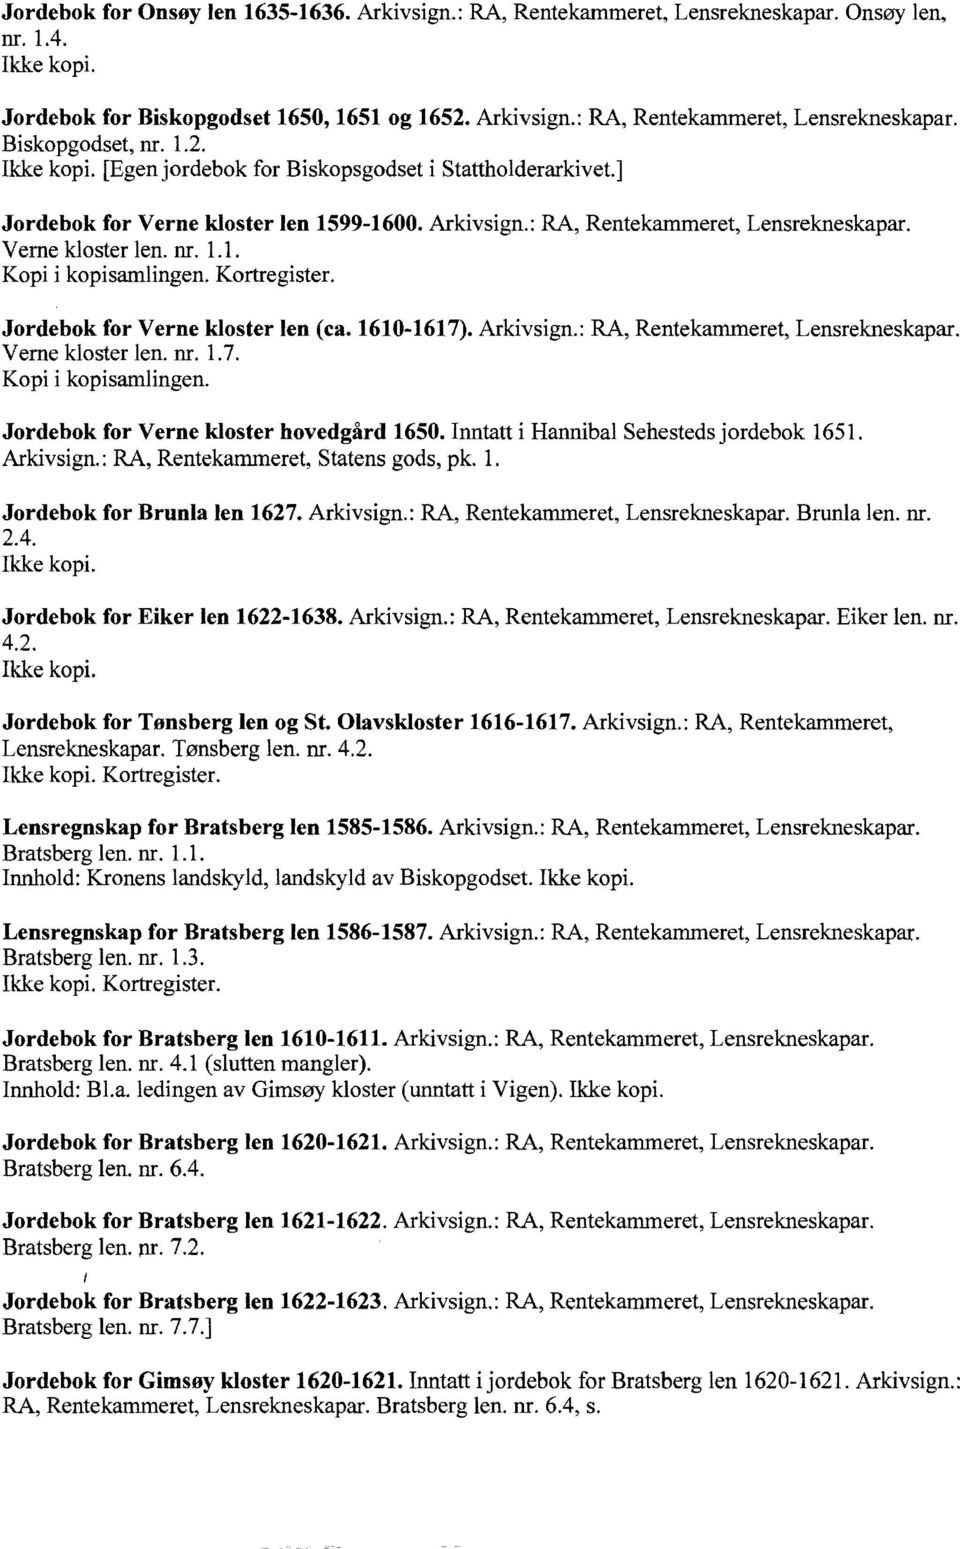 1610-1617). Arkivsign.: RA, Rentekammeret, Lensrekneskapar. Verne kloster len. nr. l.7. Jordebok for Verne kloster hovedgård 1650. Inntatt i Hannibal Sehestedsjordebok 1651. Arkivsign. : RA, Rentekammeret, Statens gods, pk.